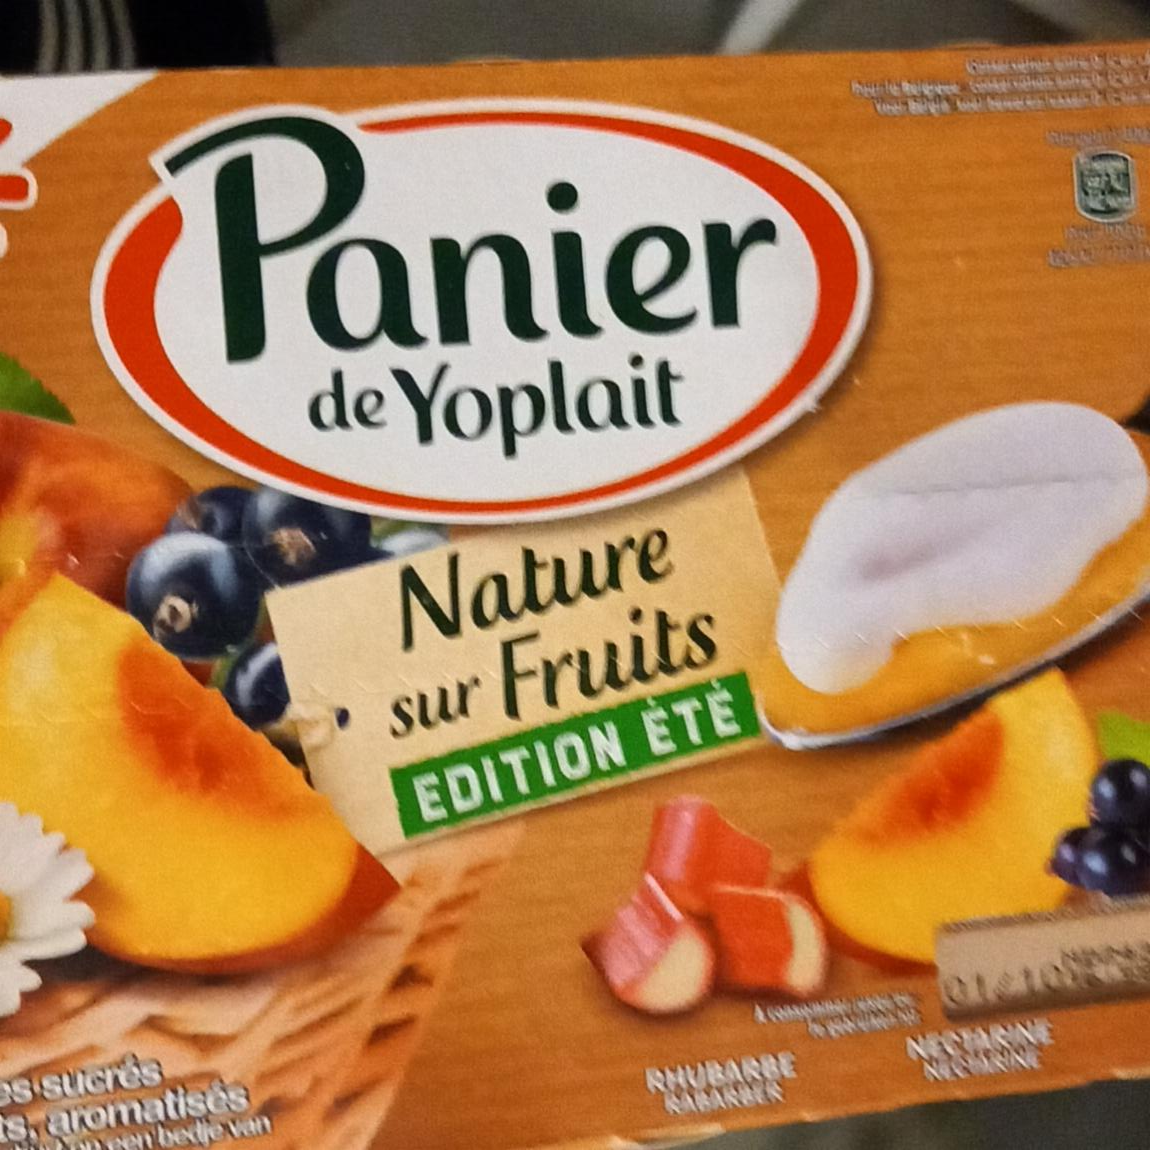 Fotografie - Nature sur Fruits Édition Panier de Yoplait